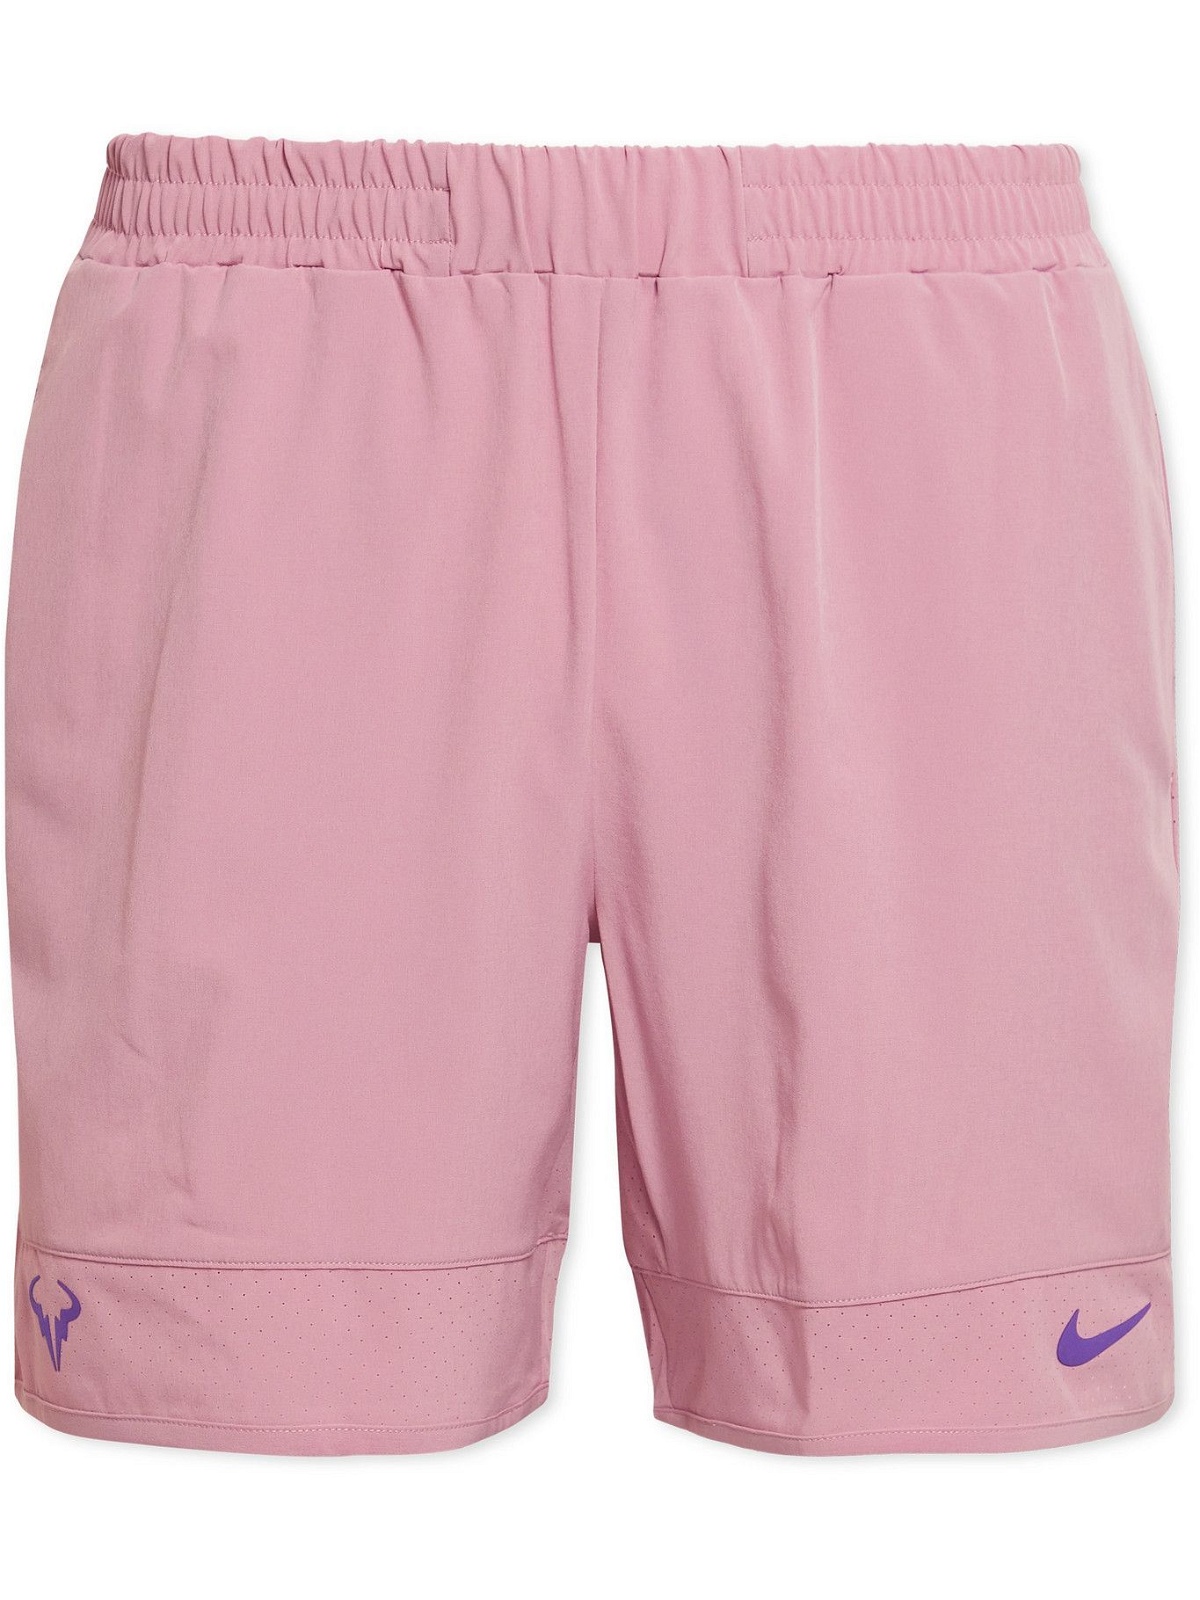 Tennis - Rafa Perforated Tennis Shorts - Pink Nike Tennis